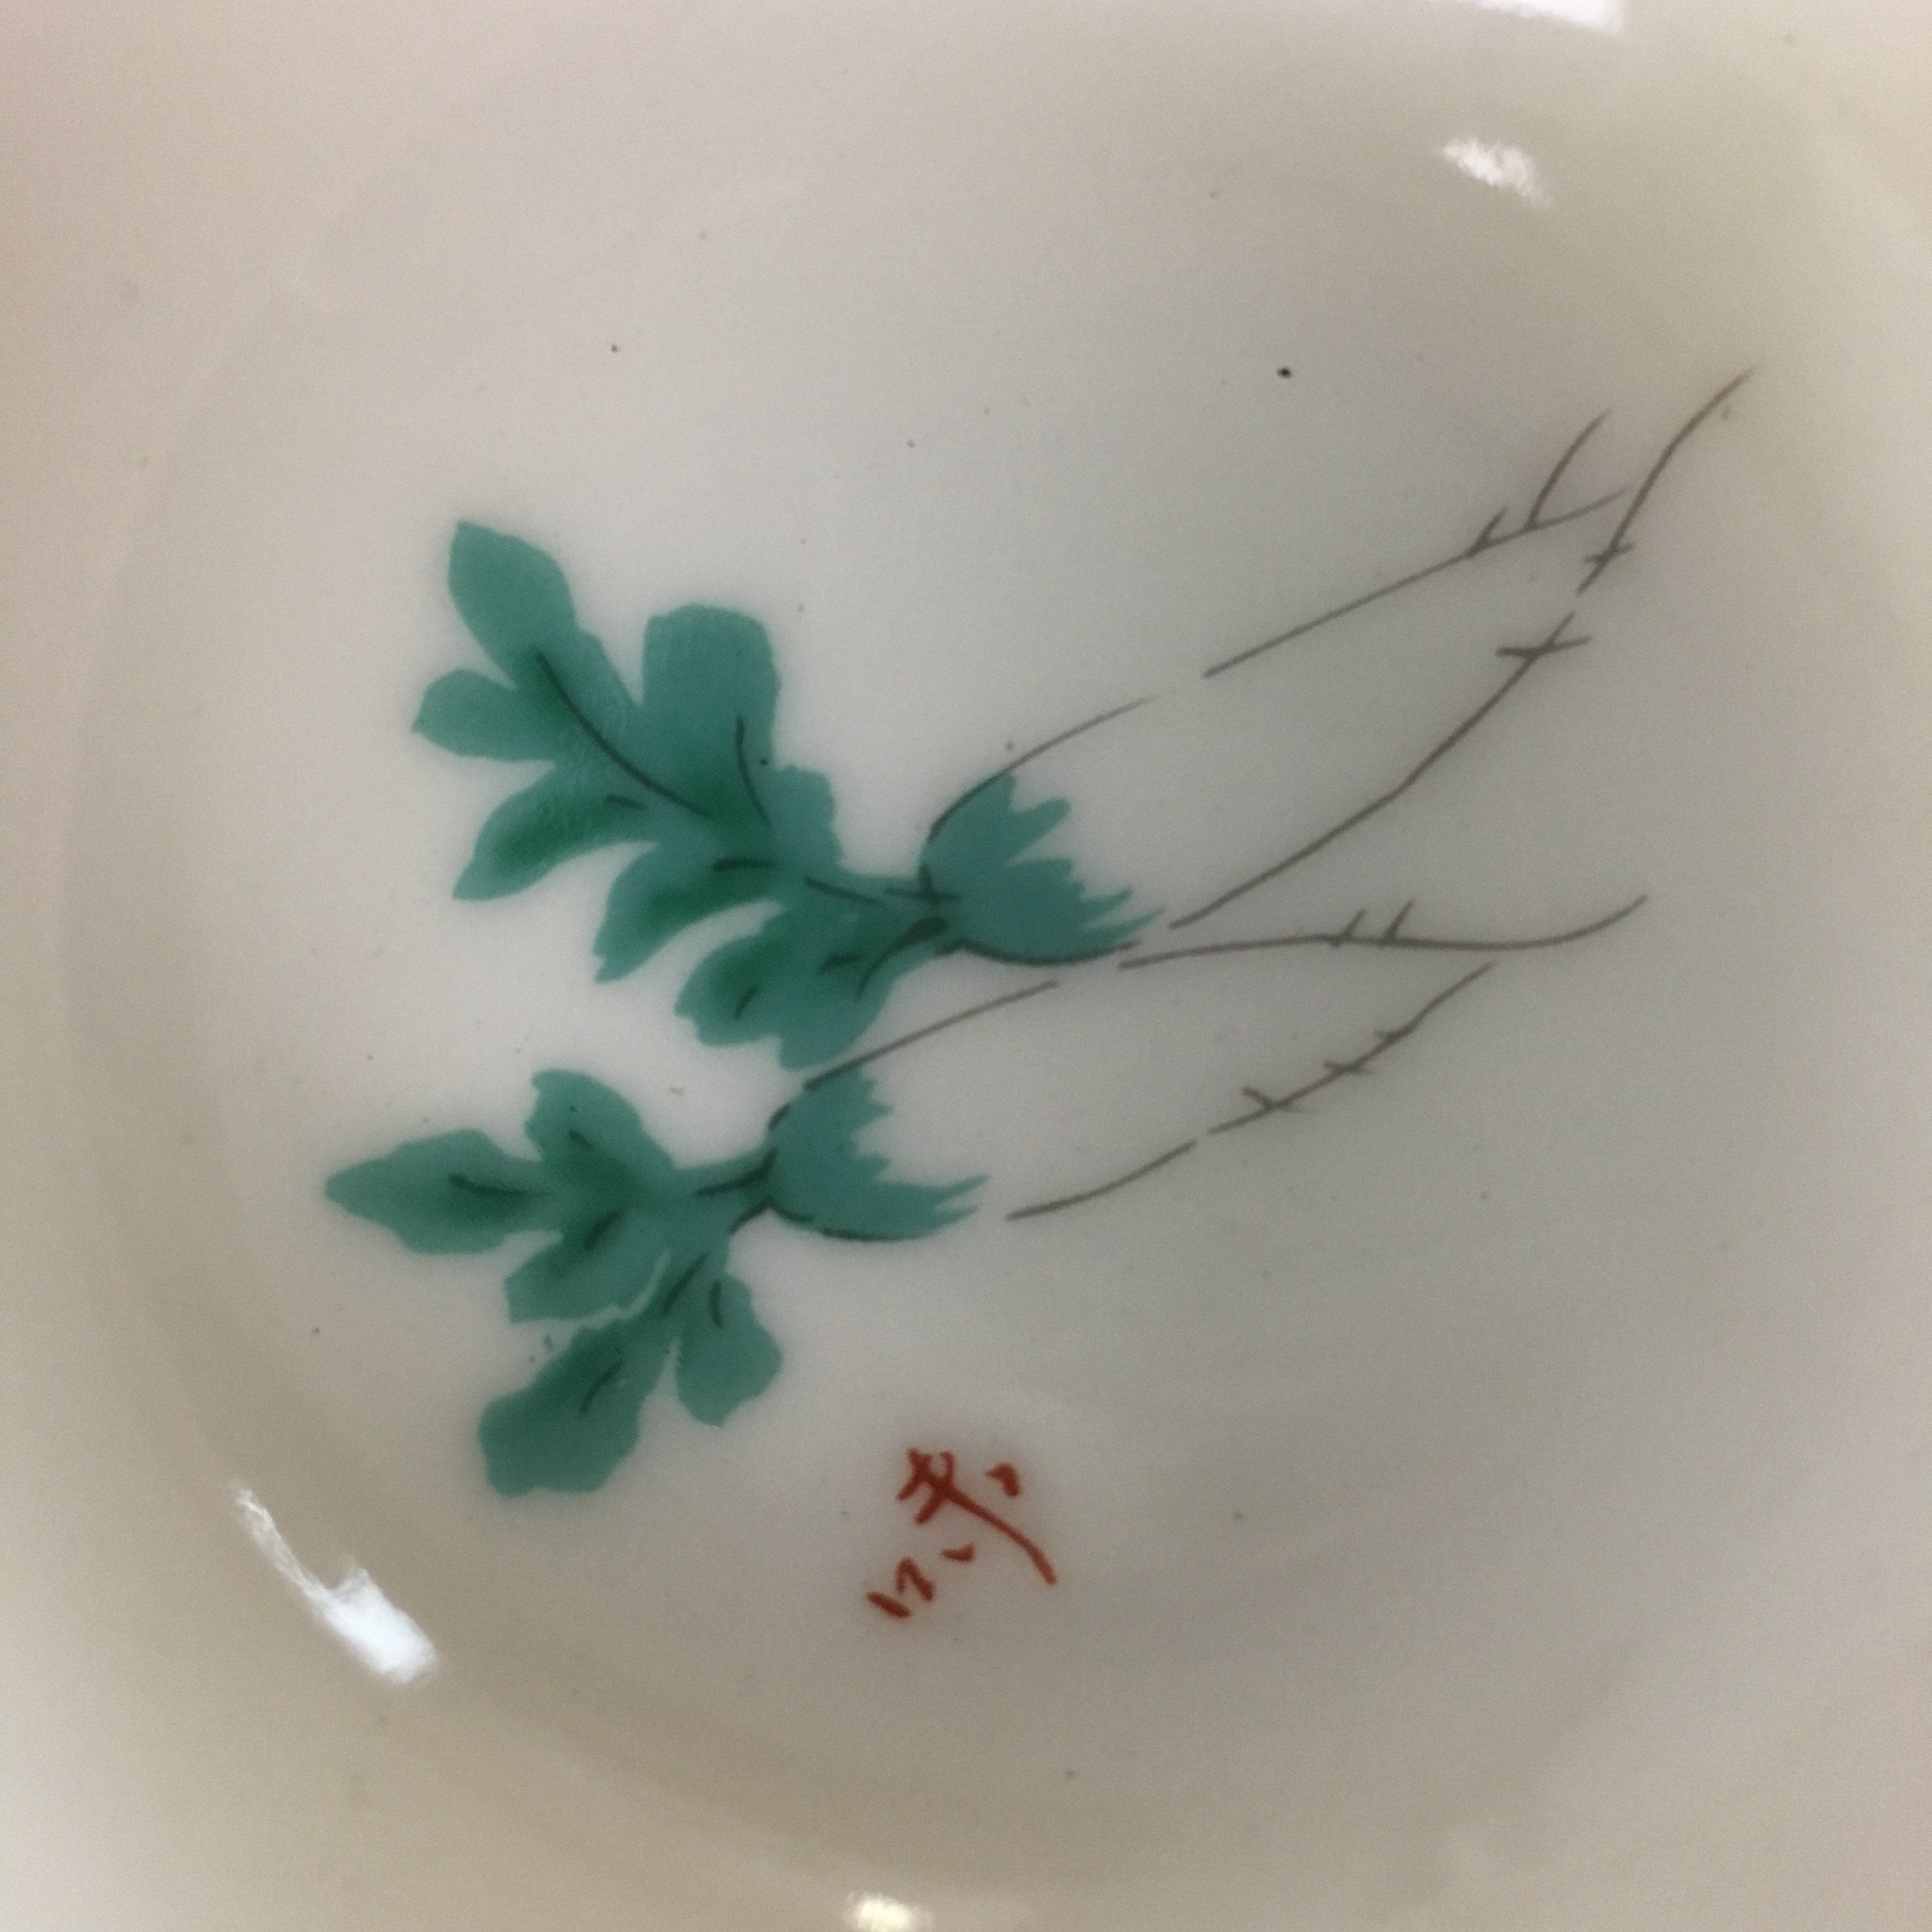 Japanese Small Bowl Vtg White Porcelain Vegetable Radish Mamezara PT799